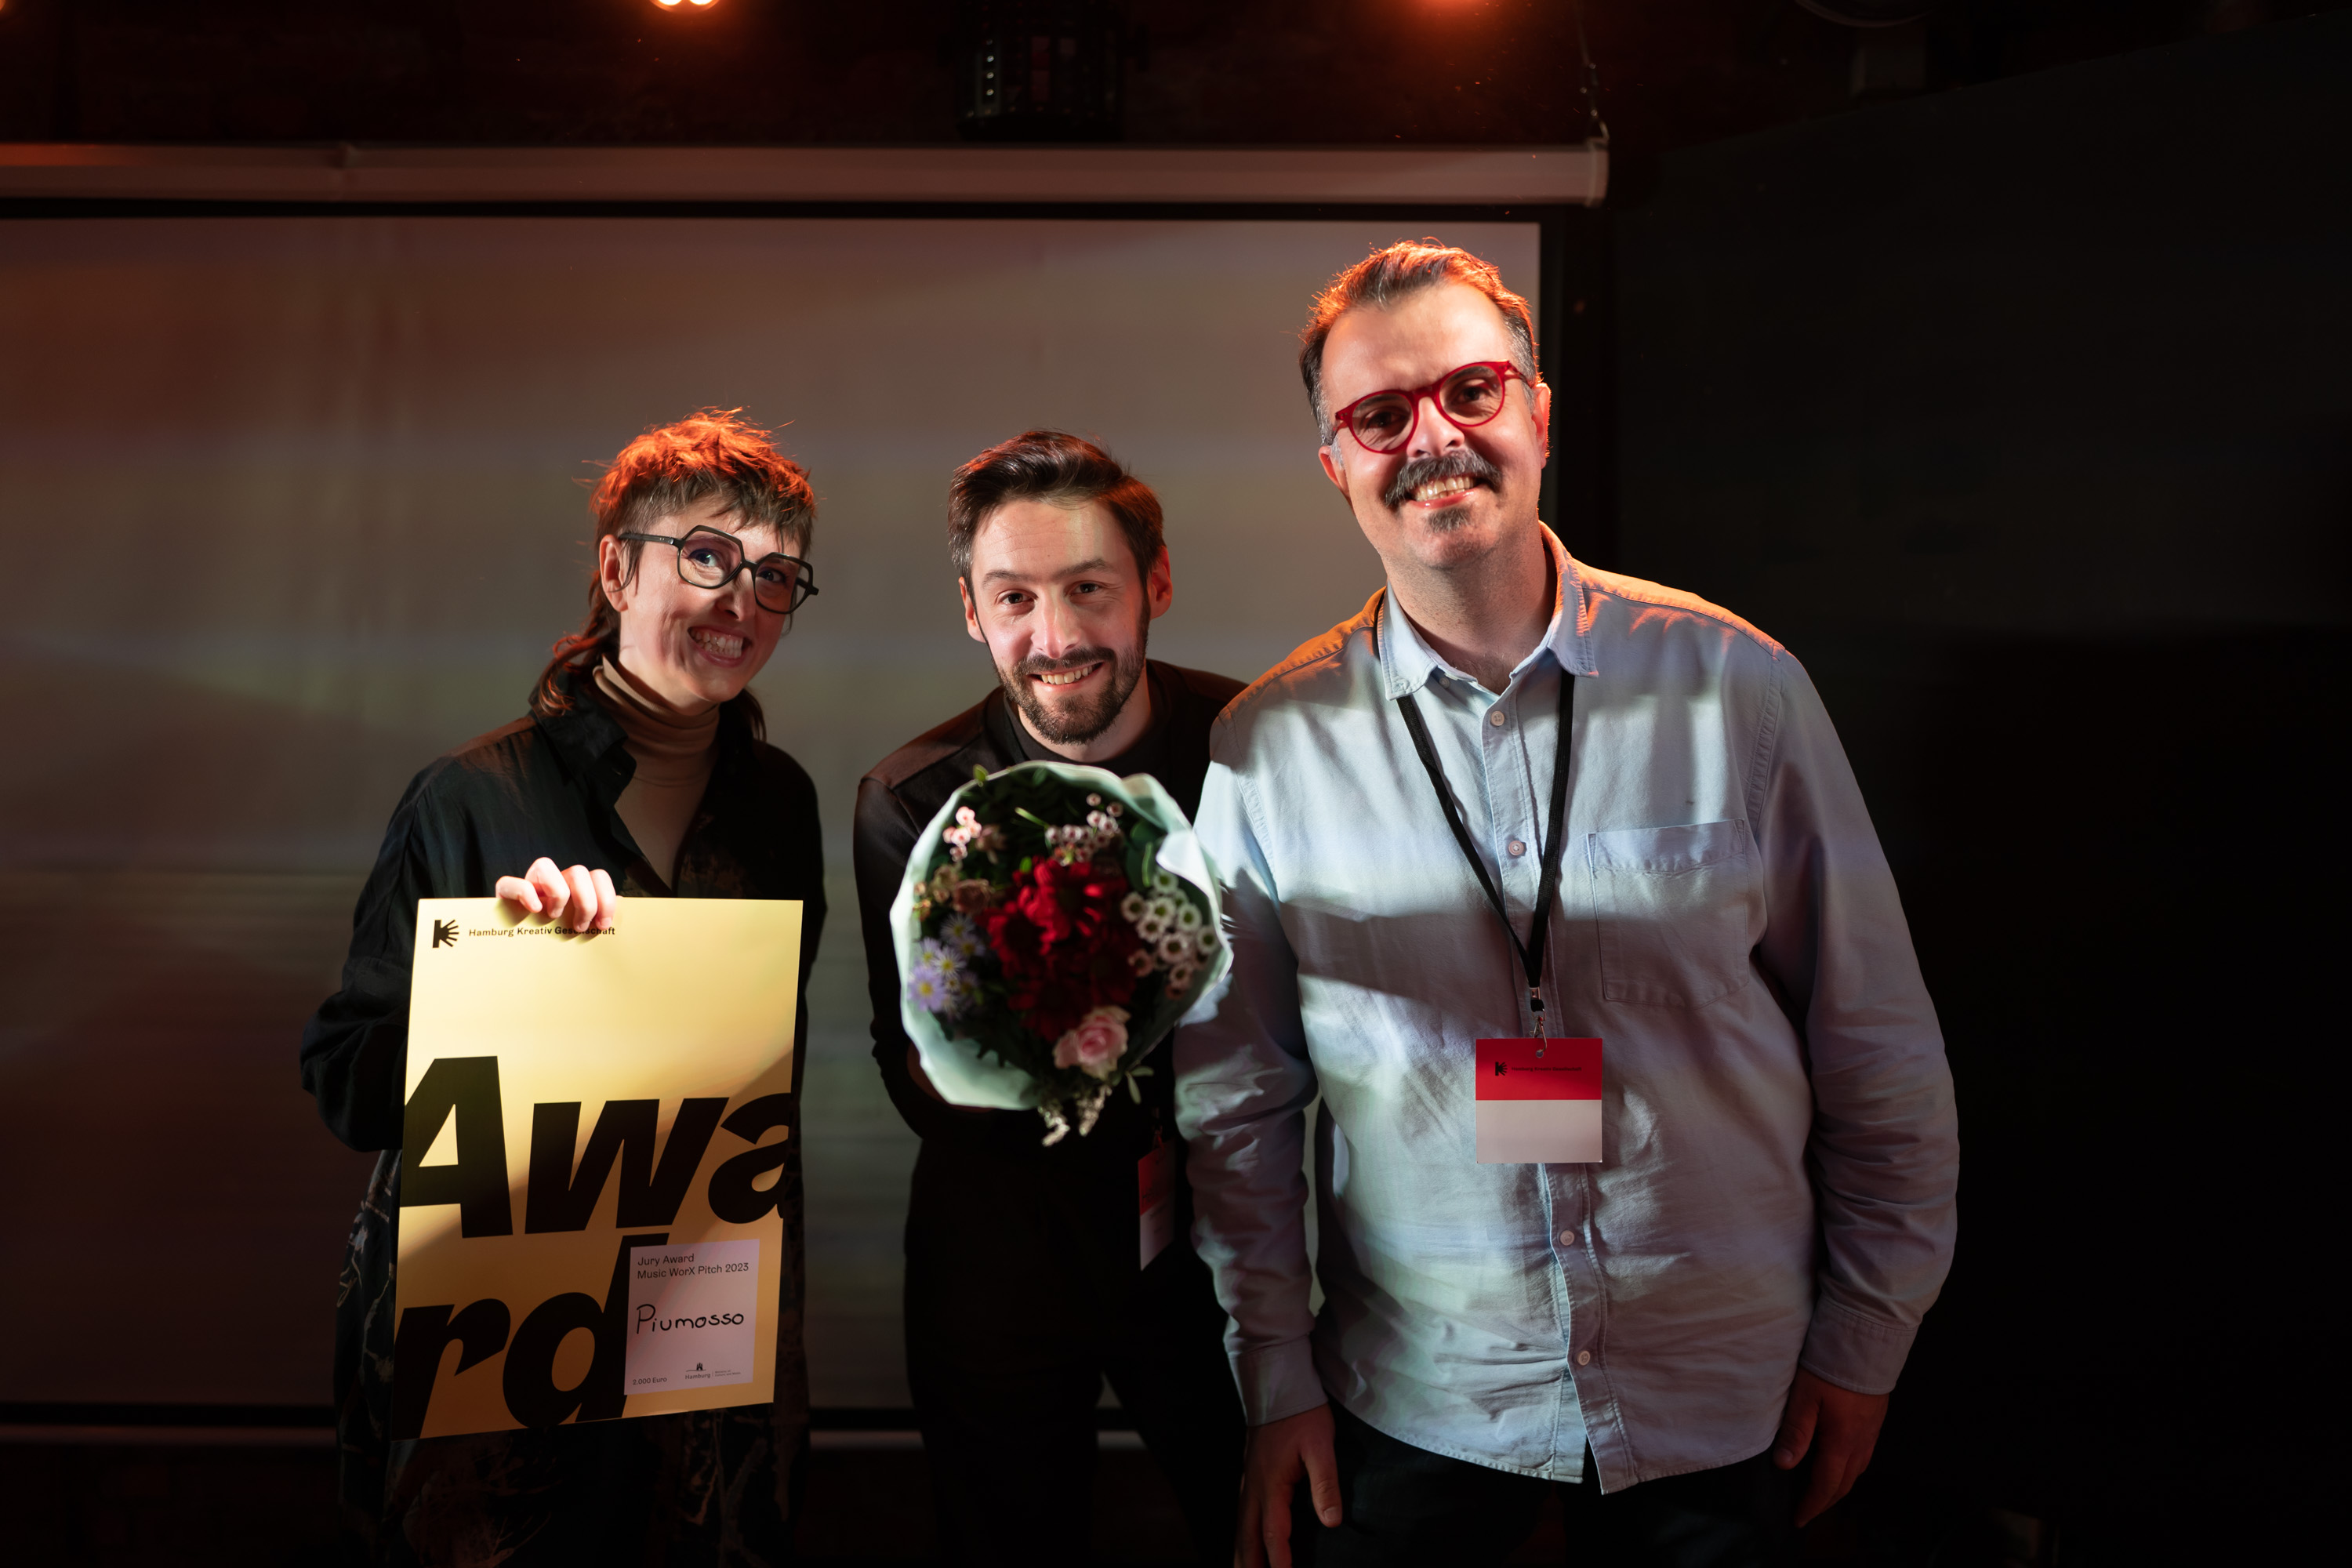 Das Team Piumosso freut sich über den Jury Award für die beste Entwicklung. v.l.n.r.: Renata Bueno Tavares, Daniel Häggman,  Daniel Motta © Jan-Marius Komorek